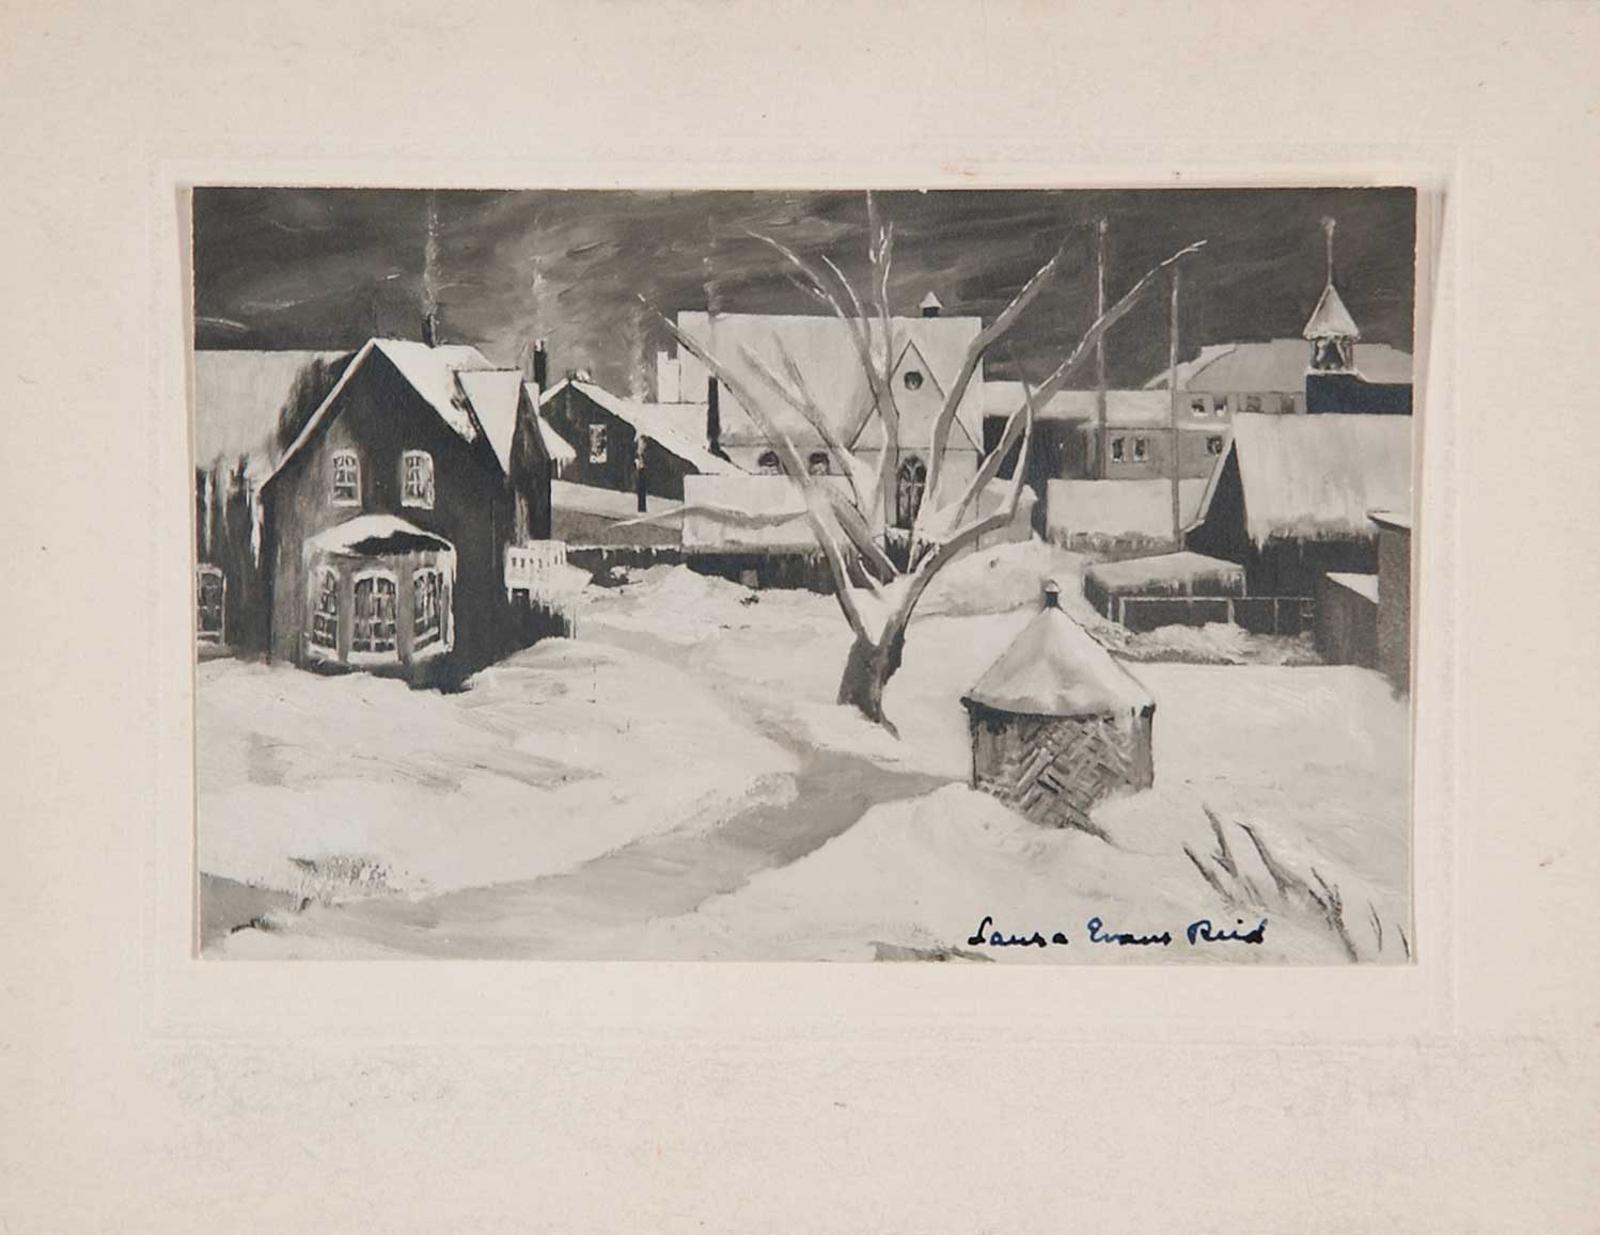 Laure Evans Reid - Vegreville 1948, April Snows